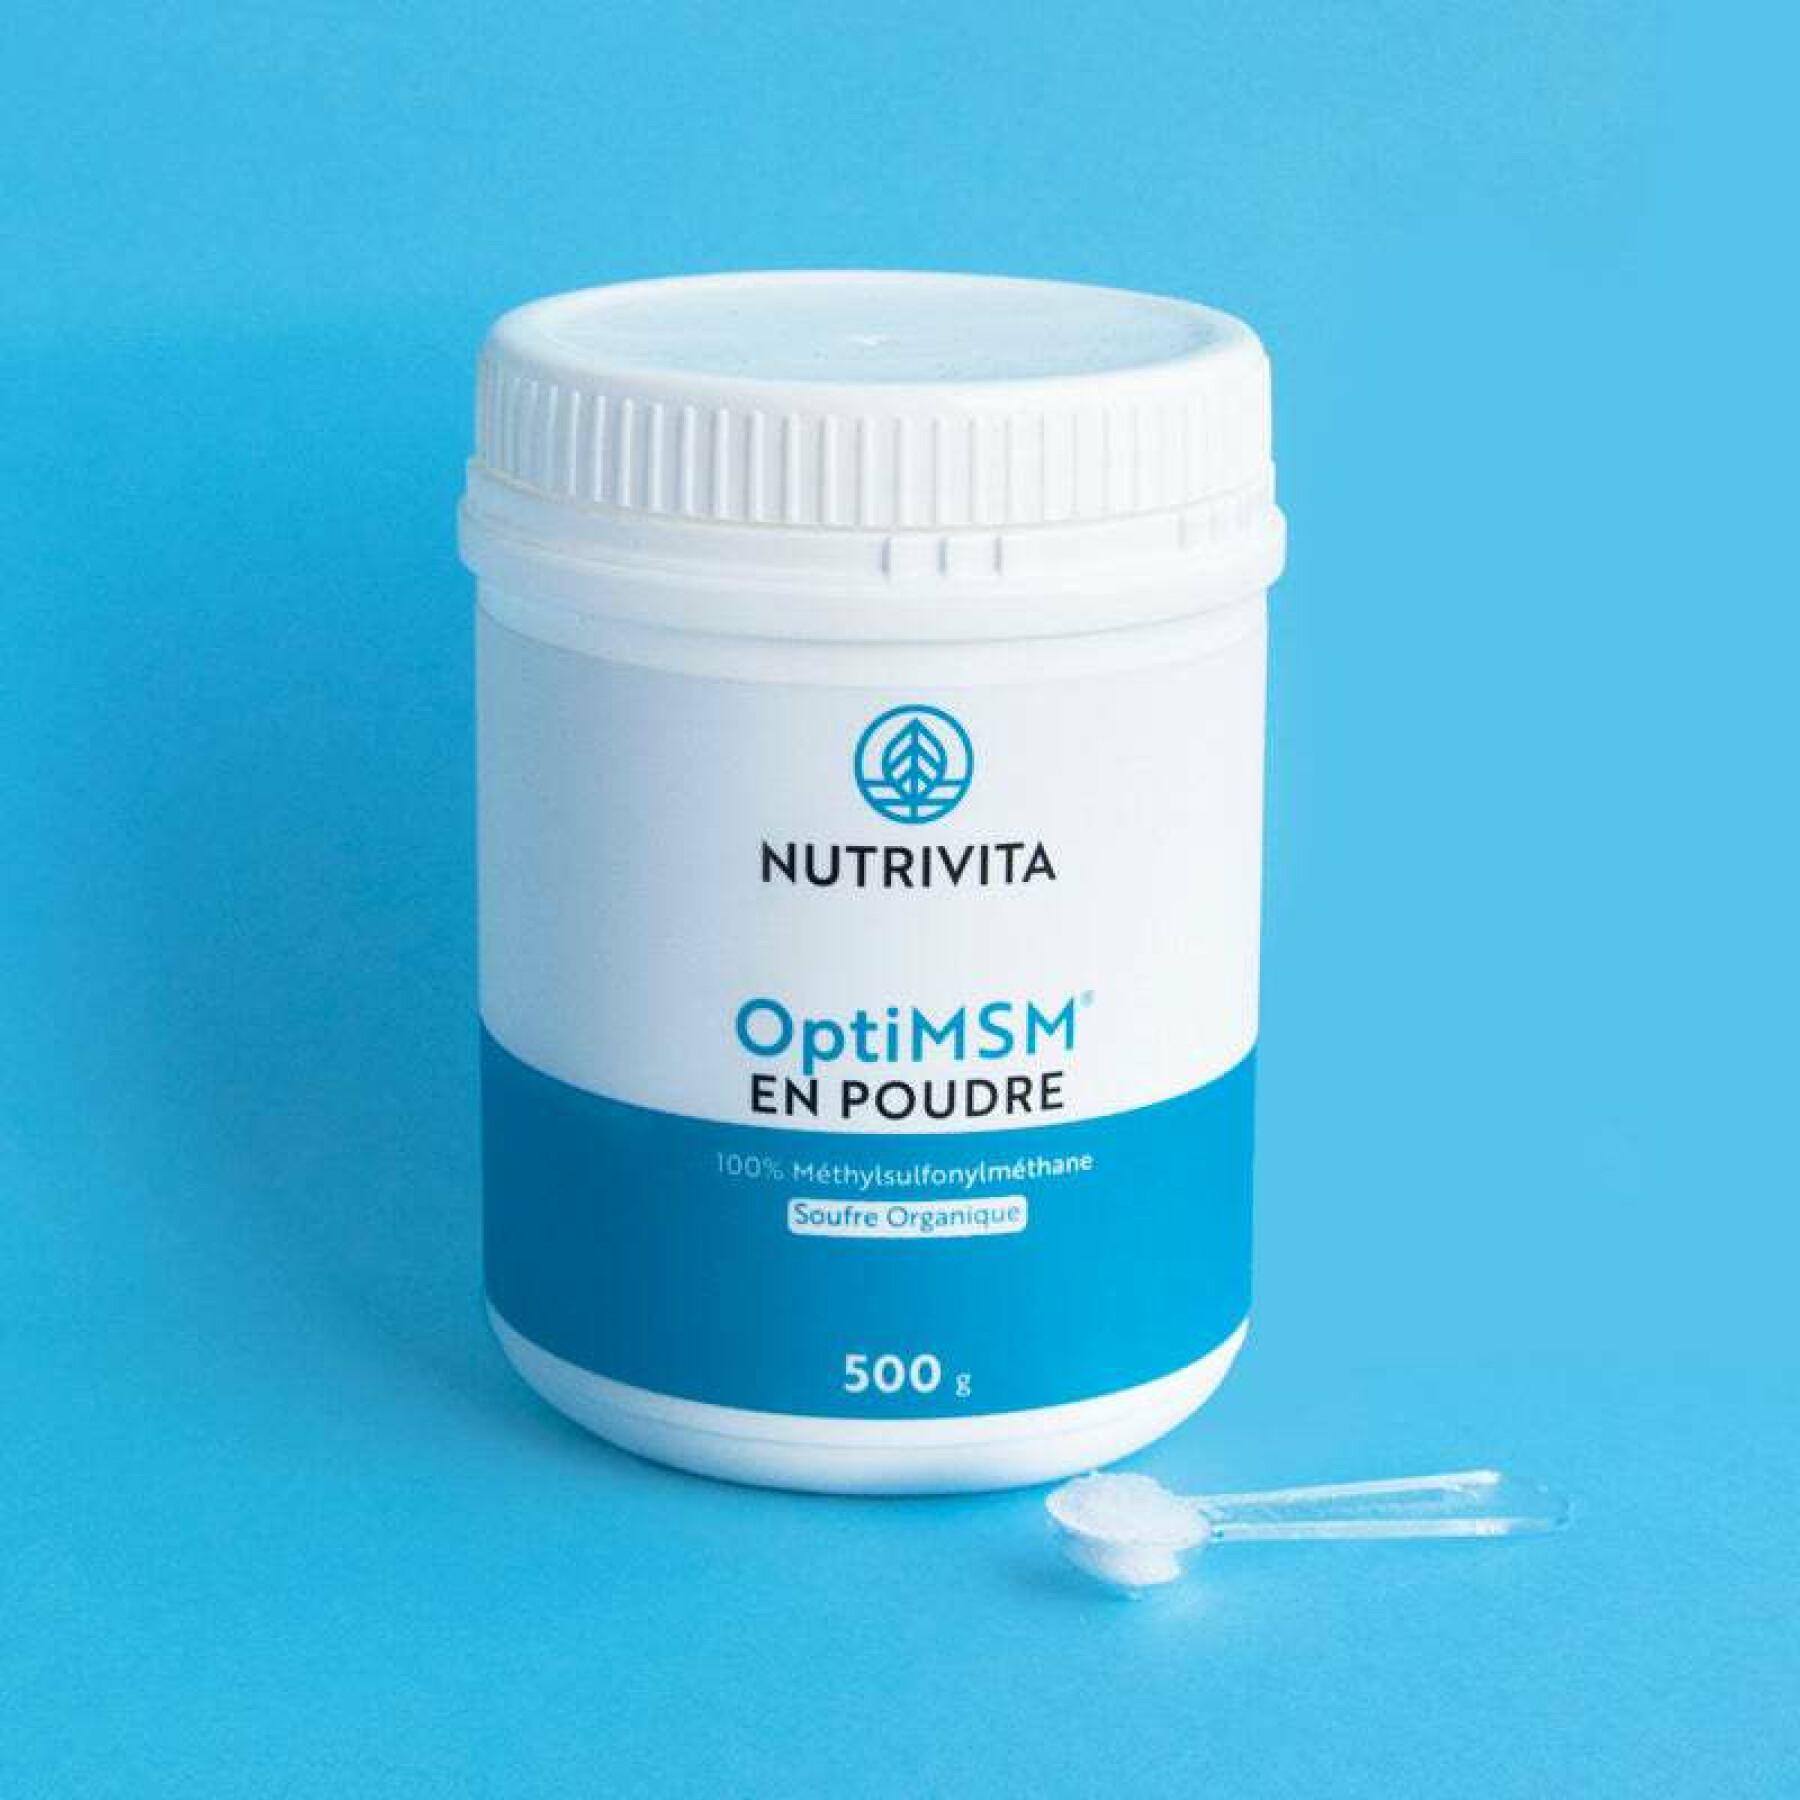 Nahrungsergänzungsmittel optimsm - Topf 500g Nutrivita